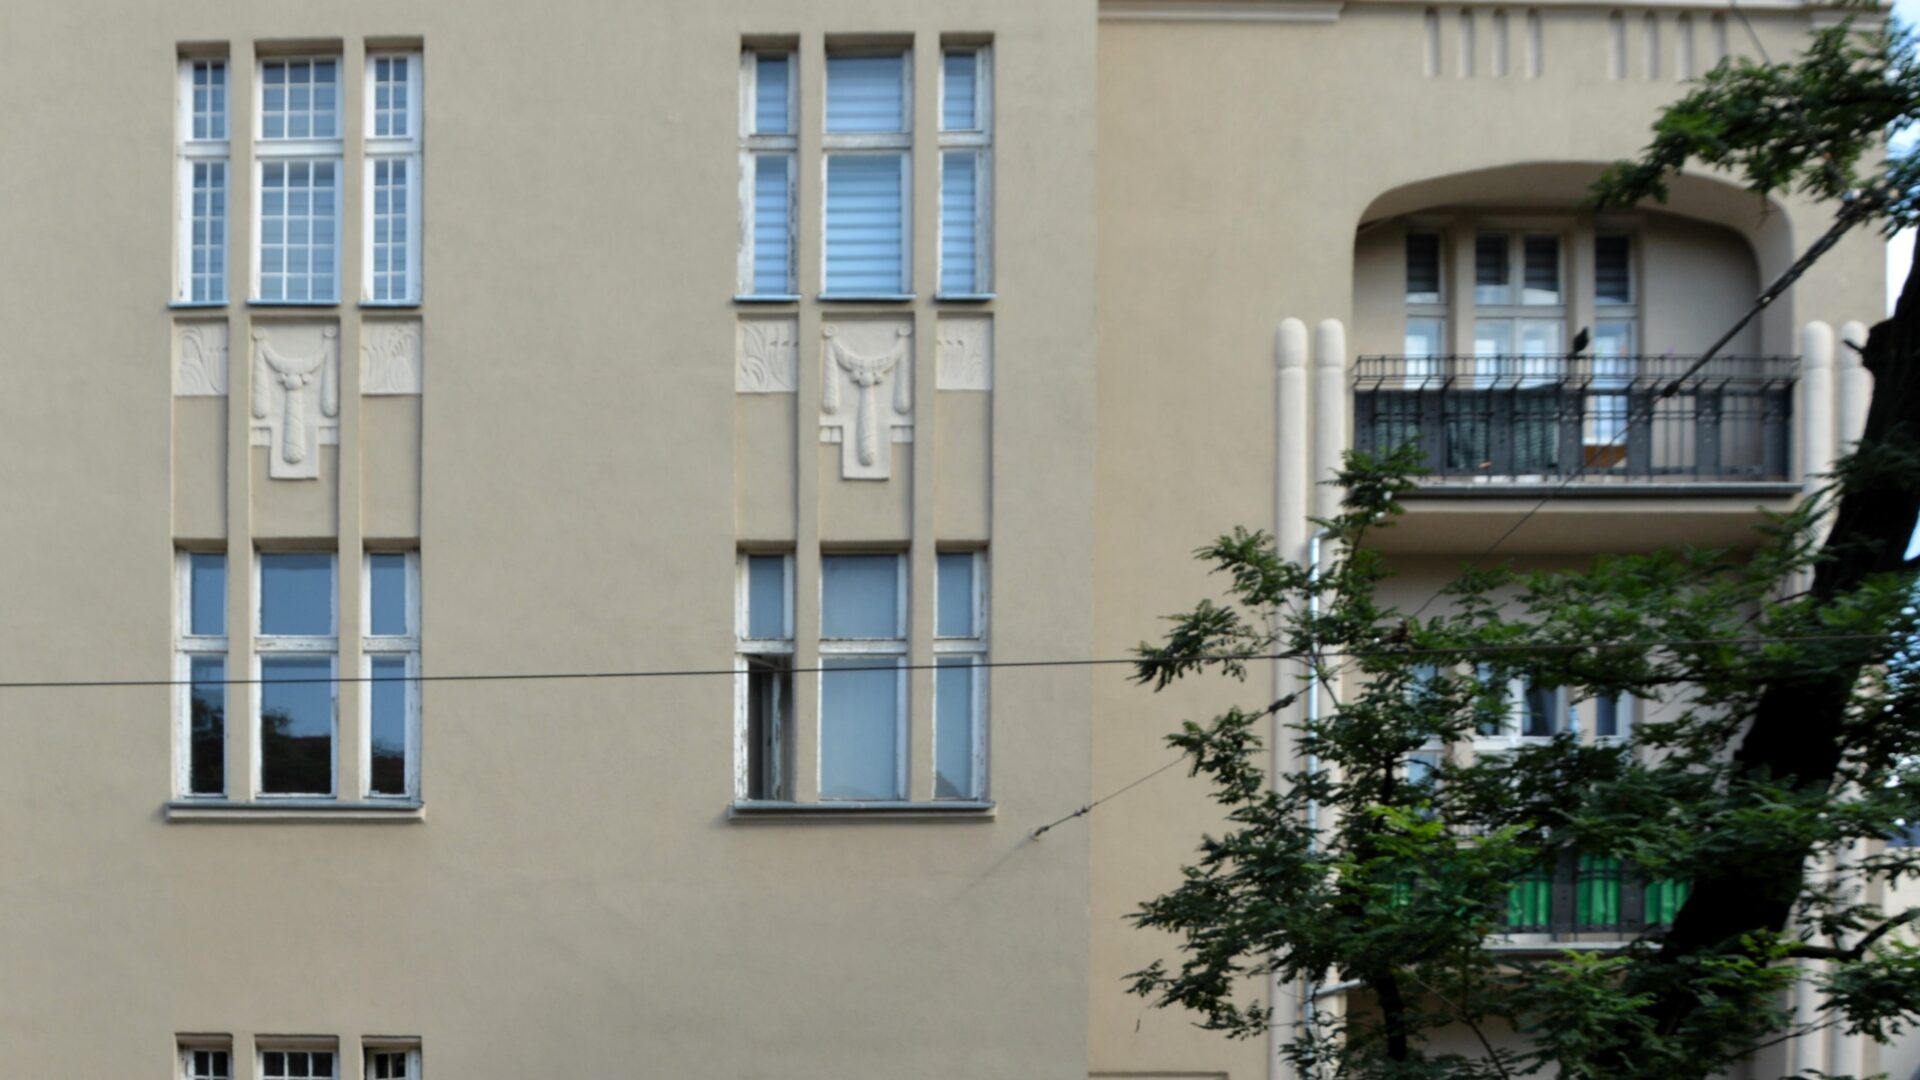 Obrazek do oprowadzania po mieszkaniu Kazimiery Iłłakowiczówny. Na fotografii kamienica, w której mieszkała poetka, łukowe wejście, po prawej stronie lodżie i drzewo.